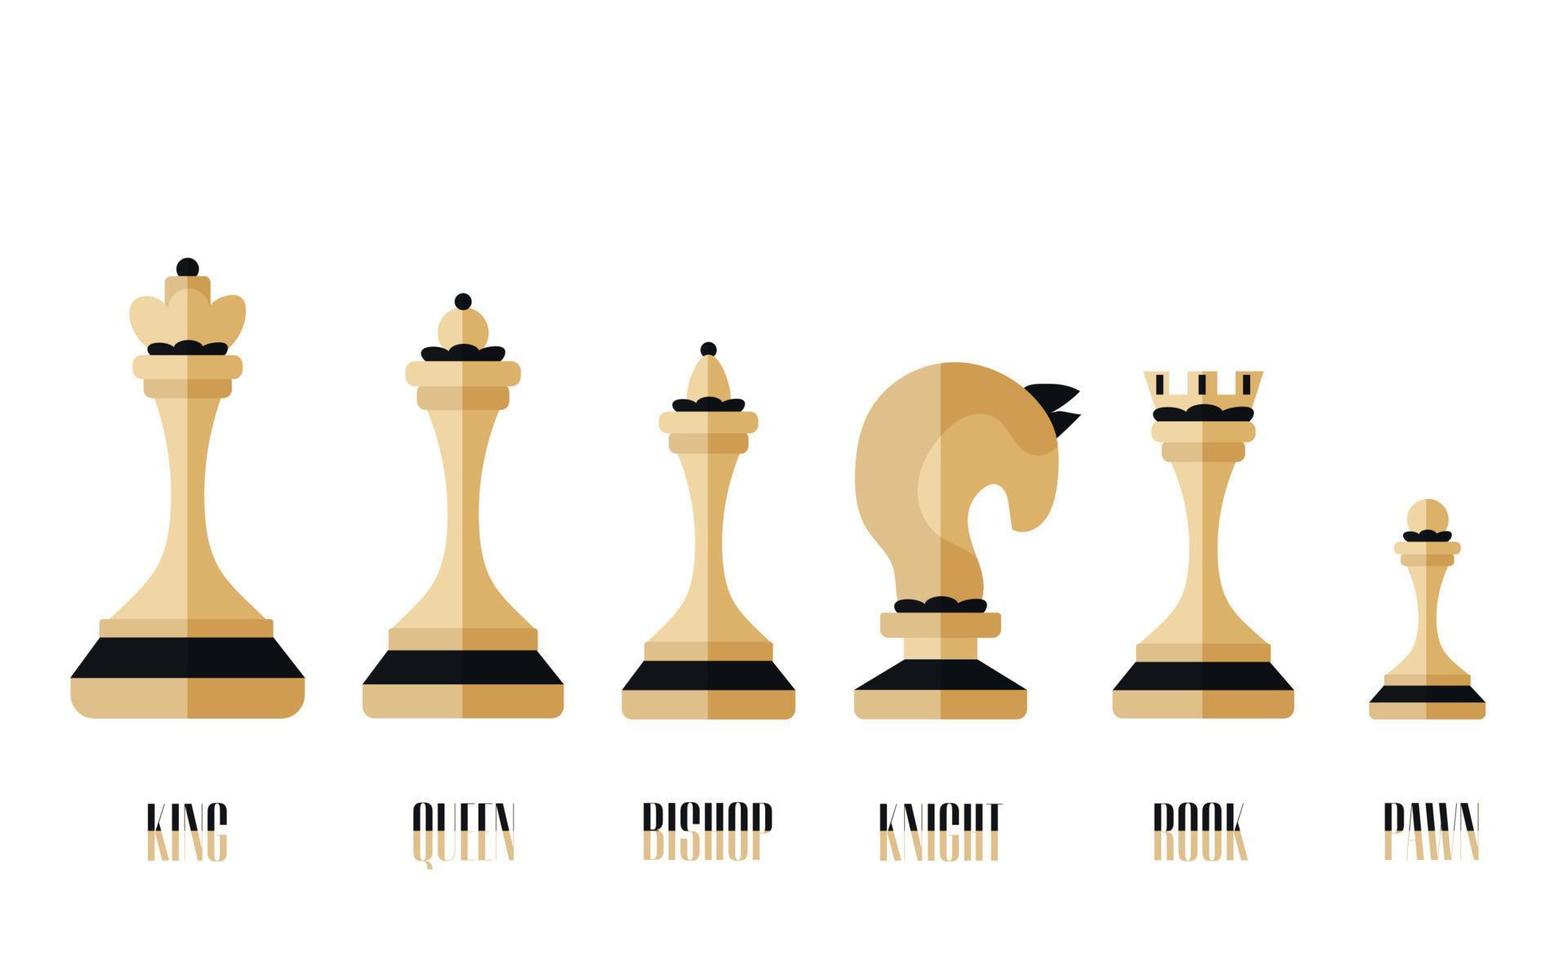 schachsymbol enthalten könig, königin, bischof, ritter, turm, bauer. Sammlung von weißem und schwarzem Schach mit Textnamen. Reihe von Silhouetten Schach auf weißem Hintergrund. flache vektorillustration. vektor